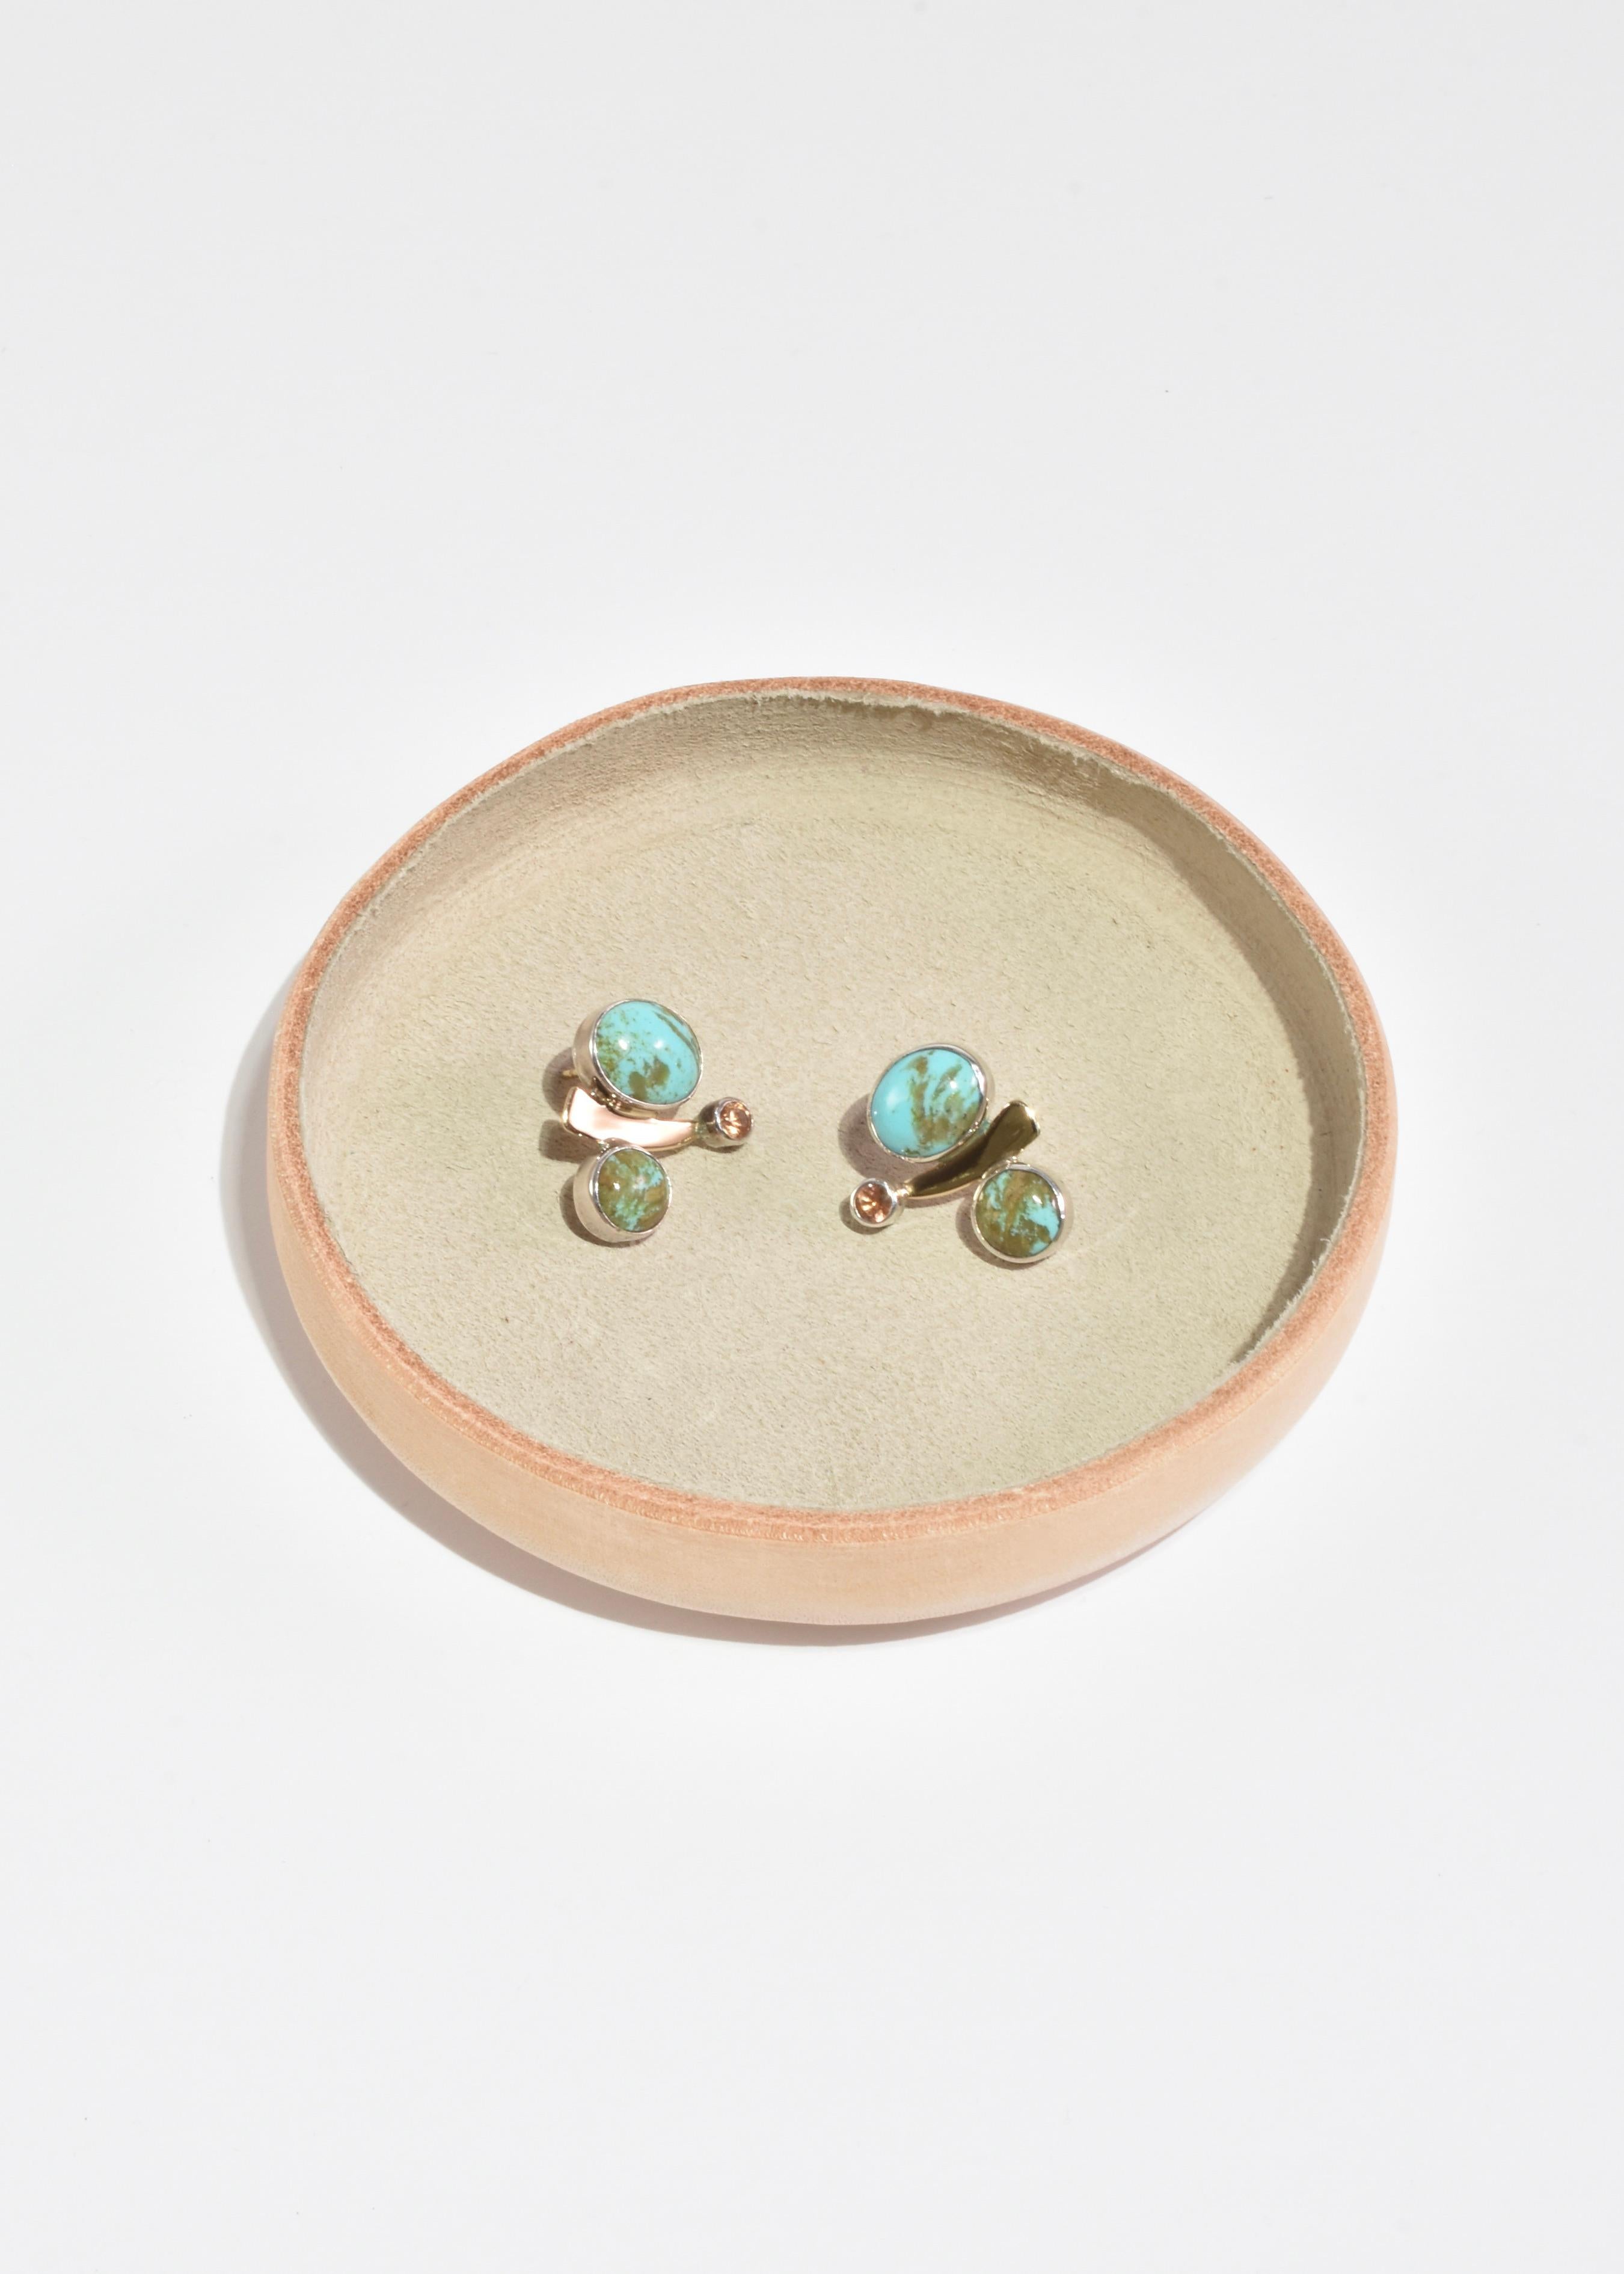 Rares boucles d'oreilles modernistes vintage en argent avec des pierres de turquoise et de topaze et des détails en or. Estampillé 585.

Matière : Argent sterling, or 14k, turquoise, topaze.